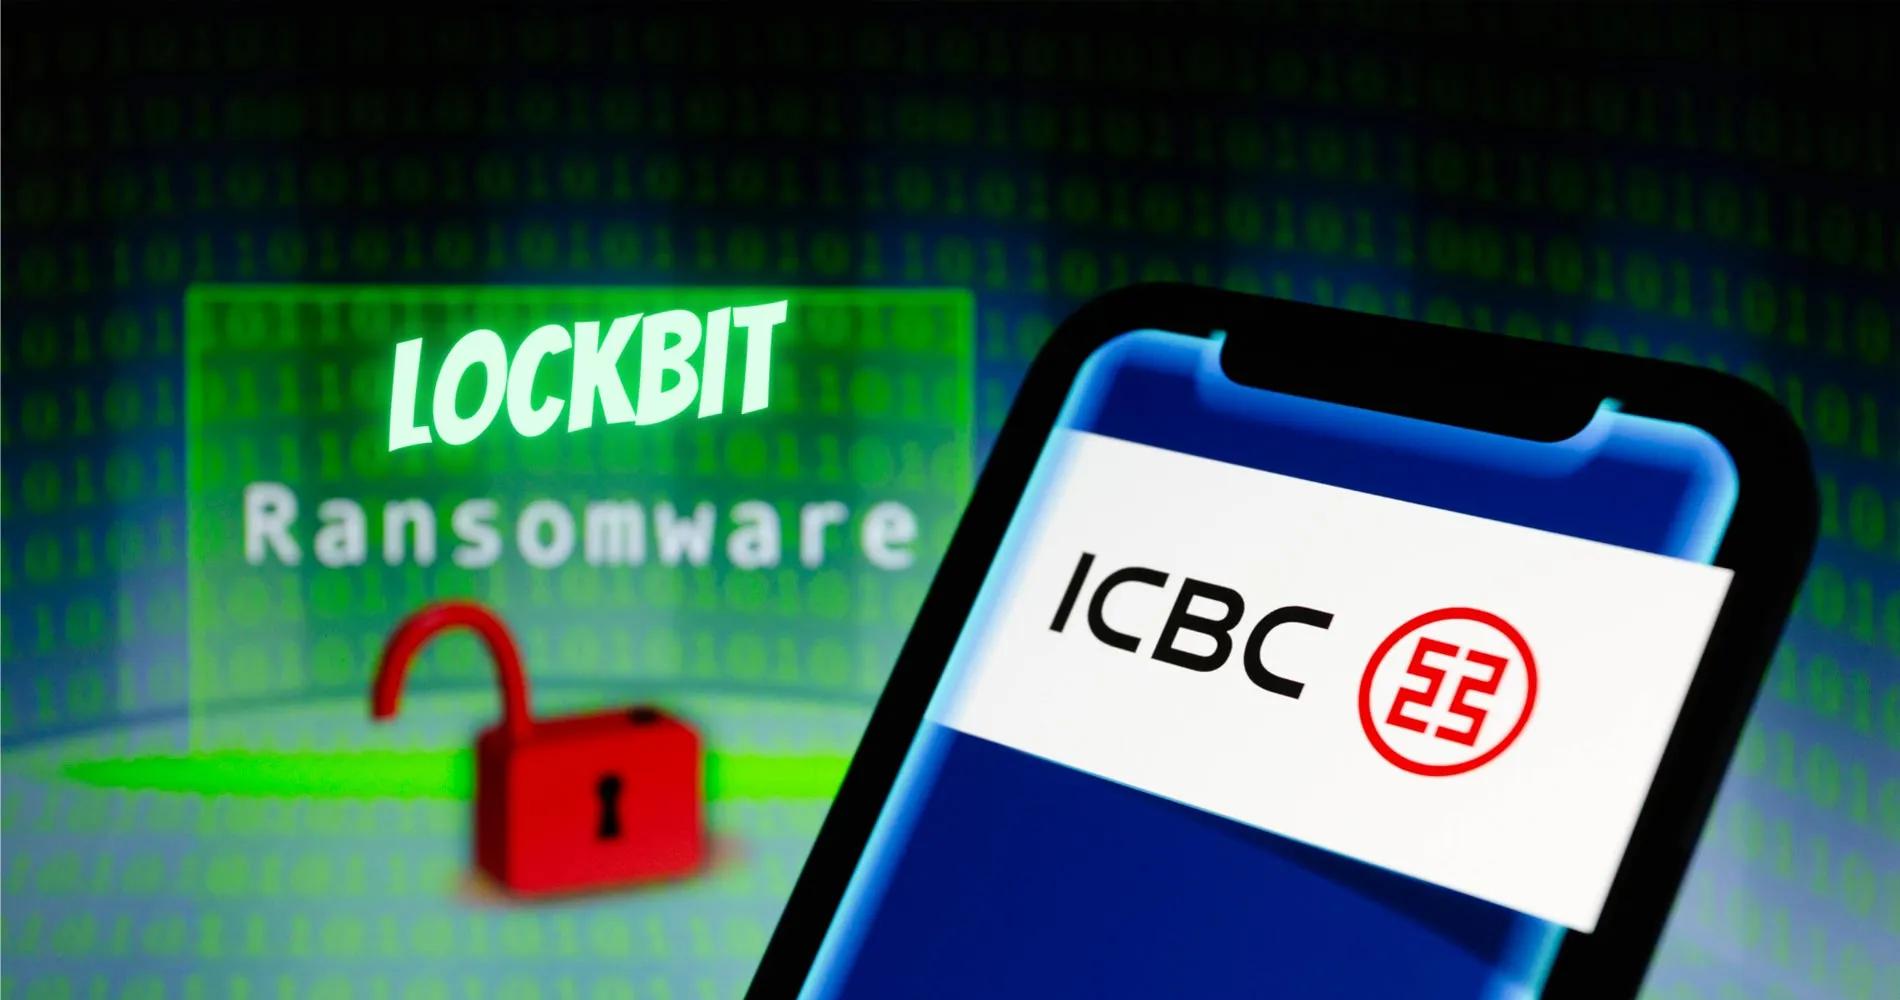 Die Cybercrime Gruppe Lockbit greift Großbank an